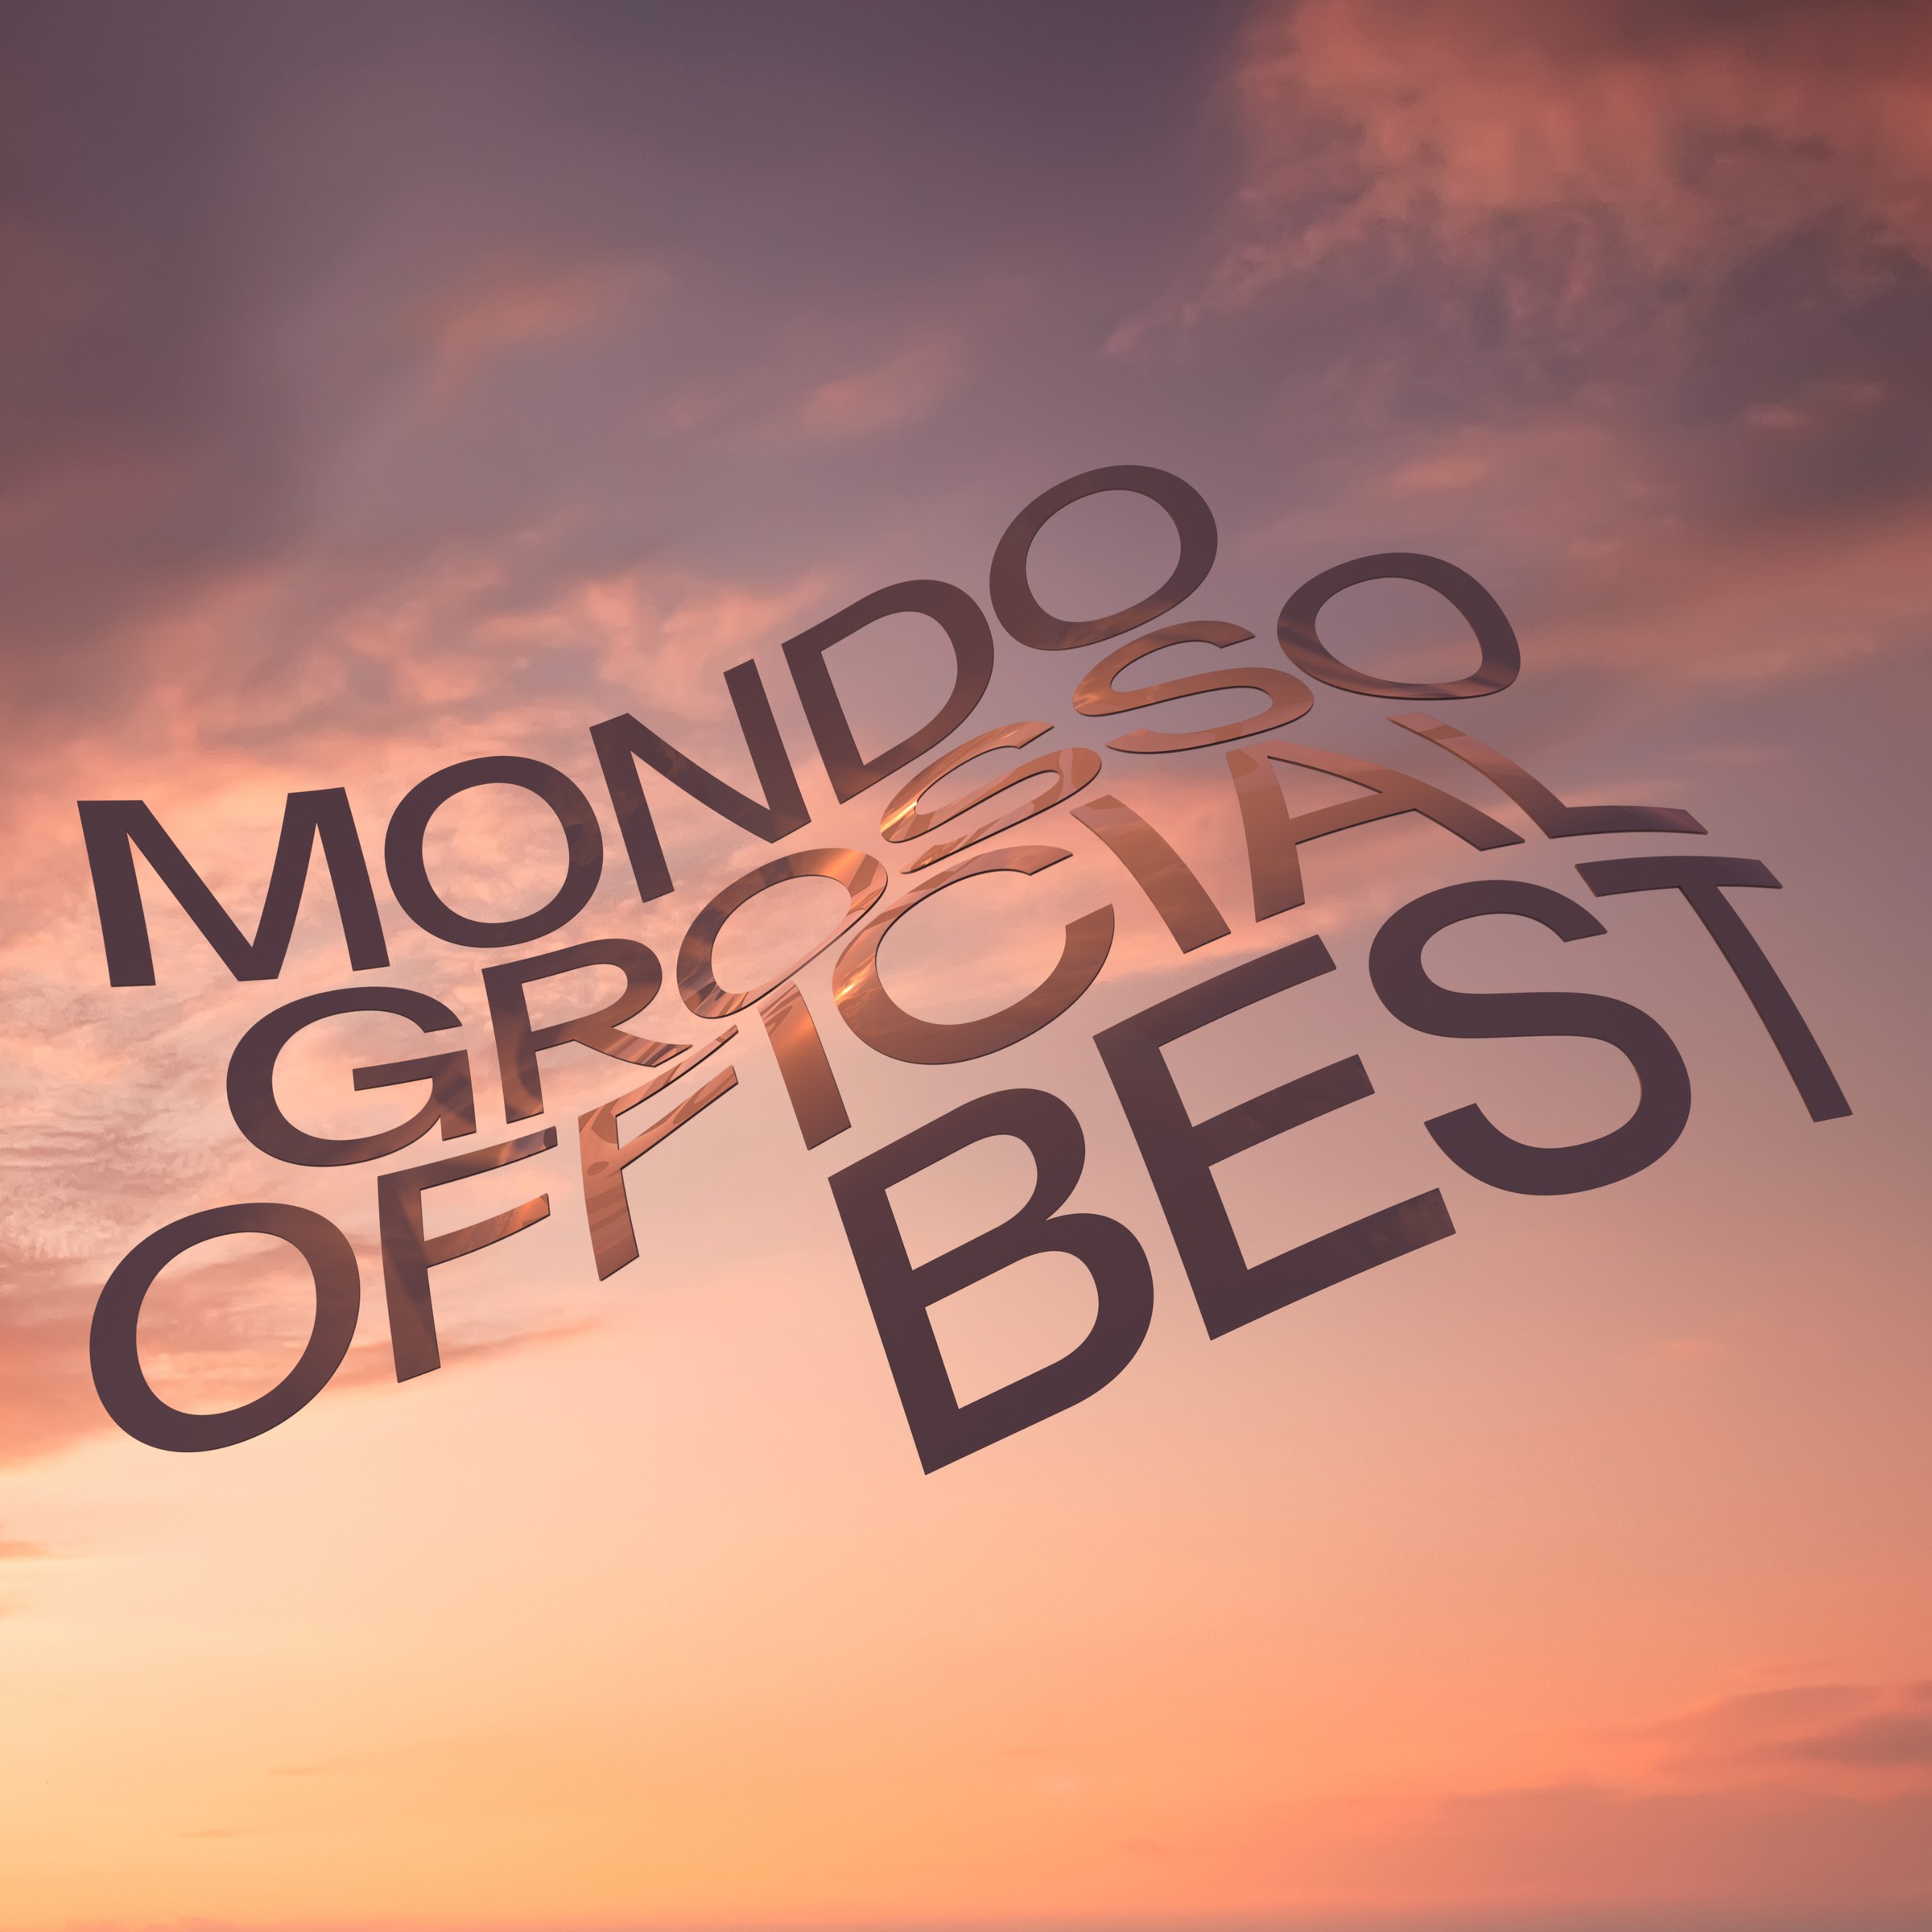 MONDO GROSSO – MONDO GROSSO OFFICIAL BEST [FLAC / WEB] [2021.11.03]